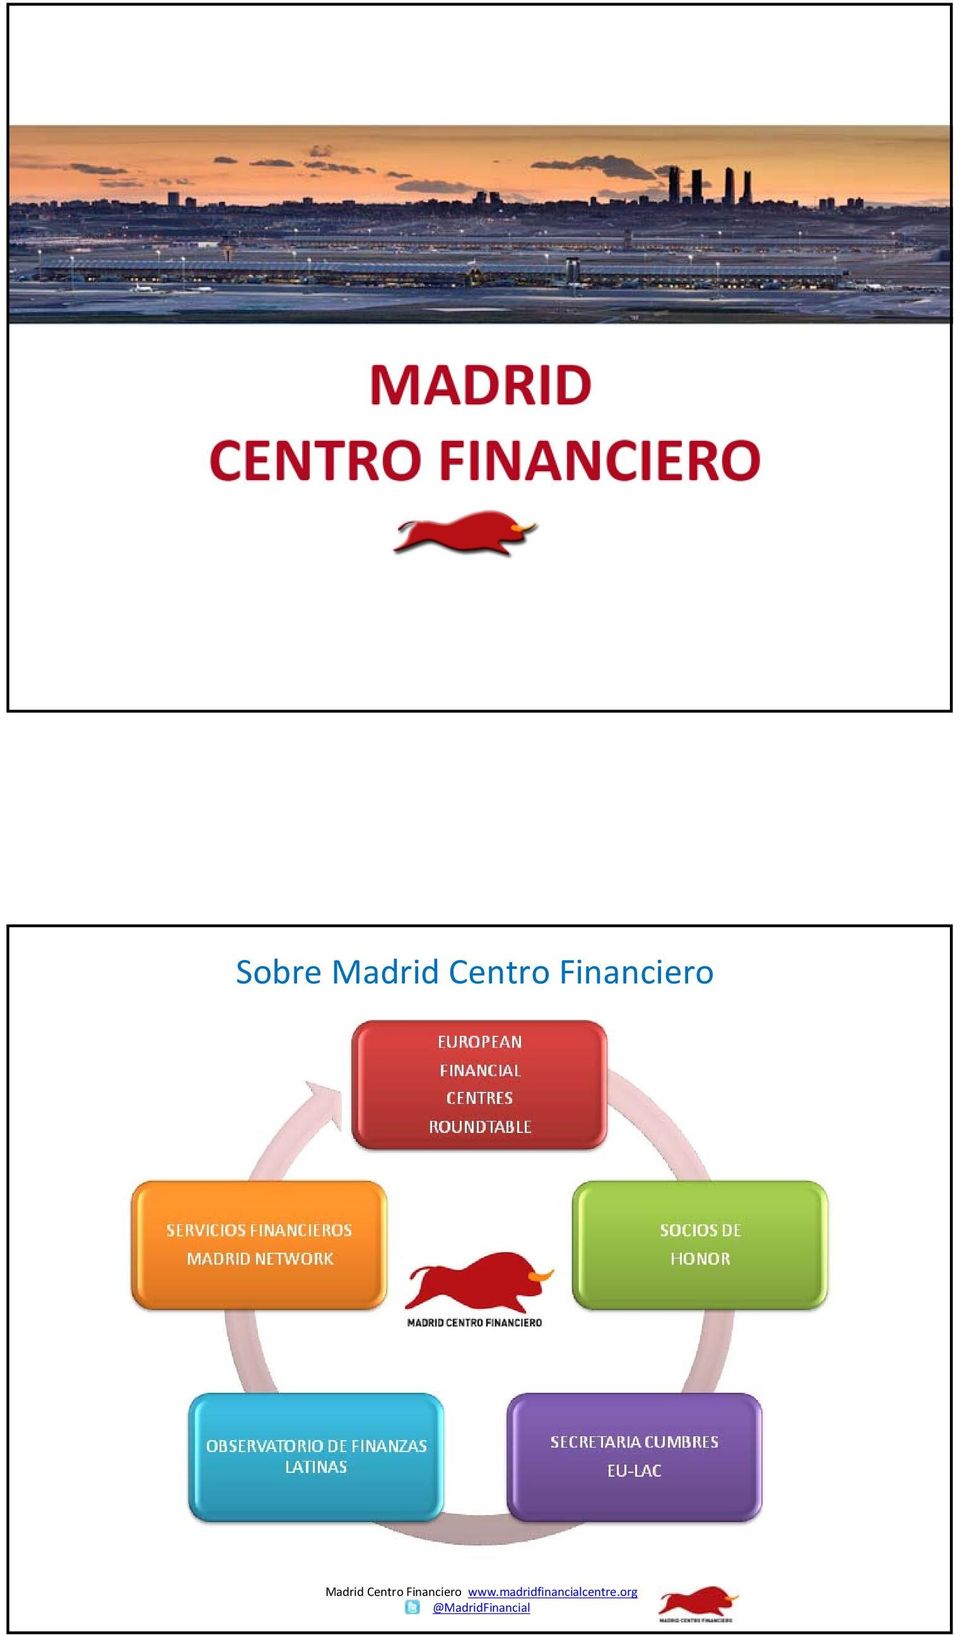 Financiero www.